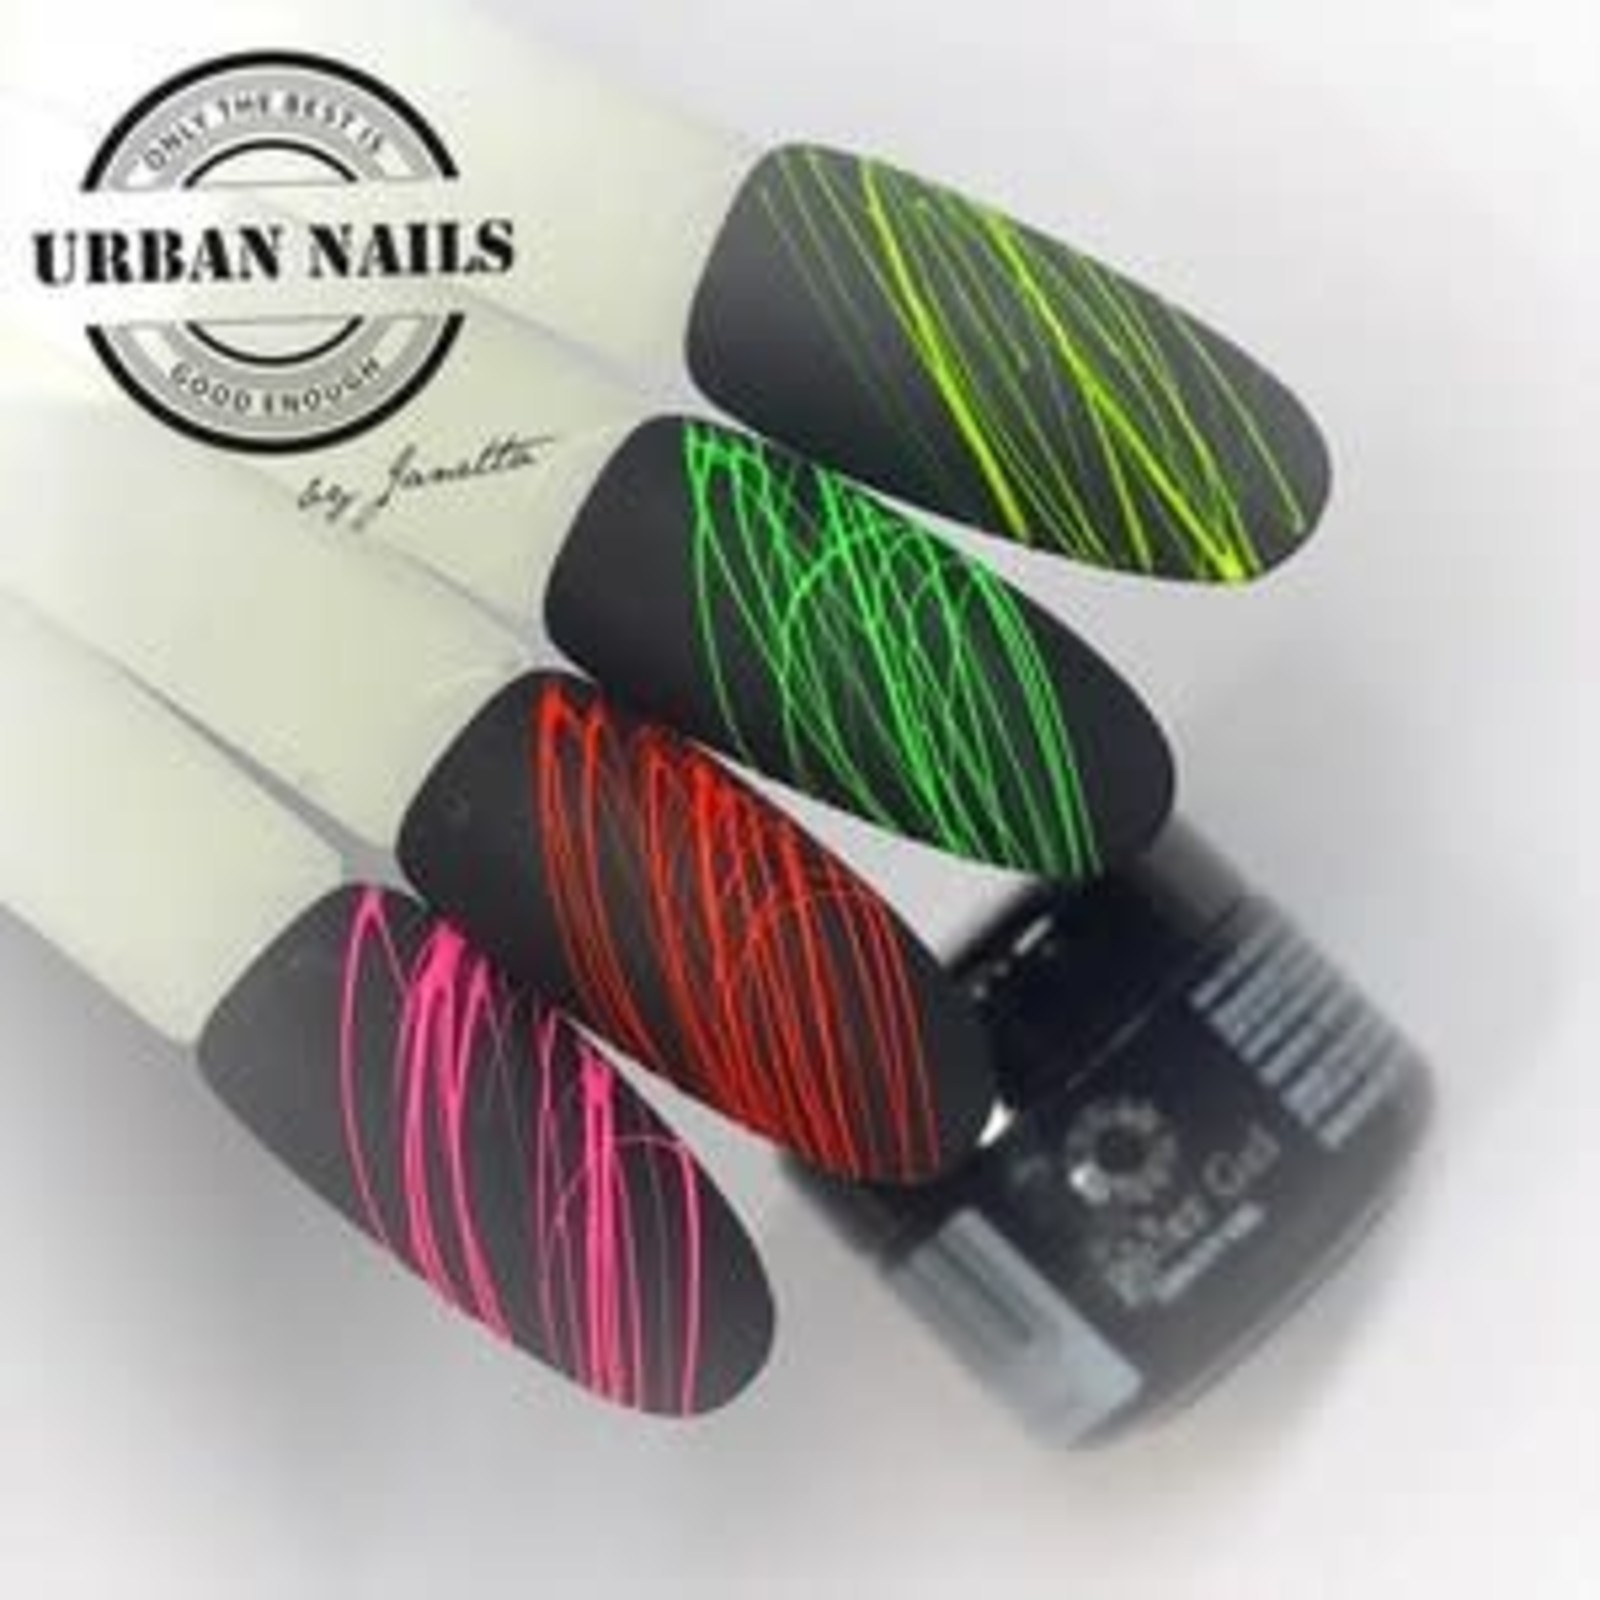 Urban nails Spider gel collectie neon